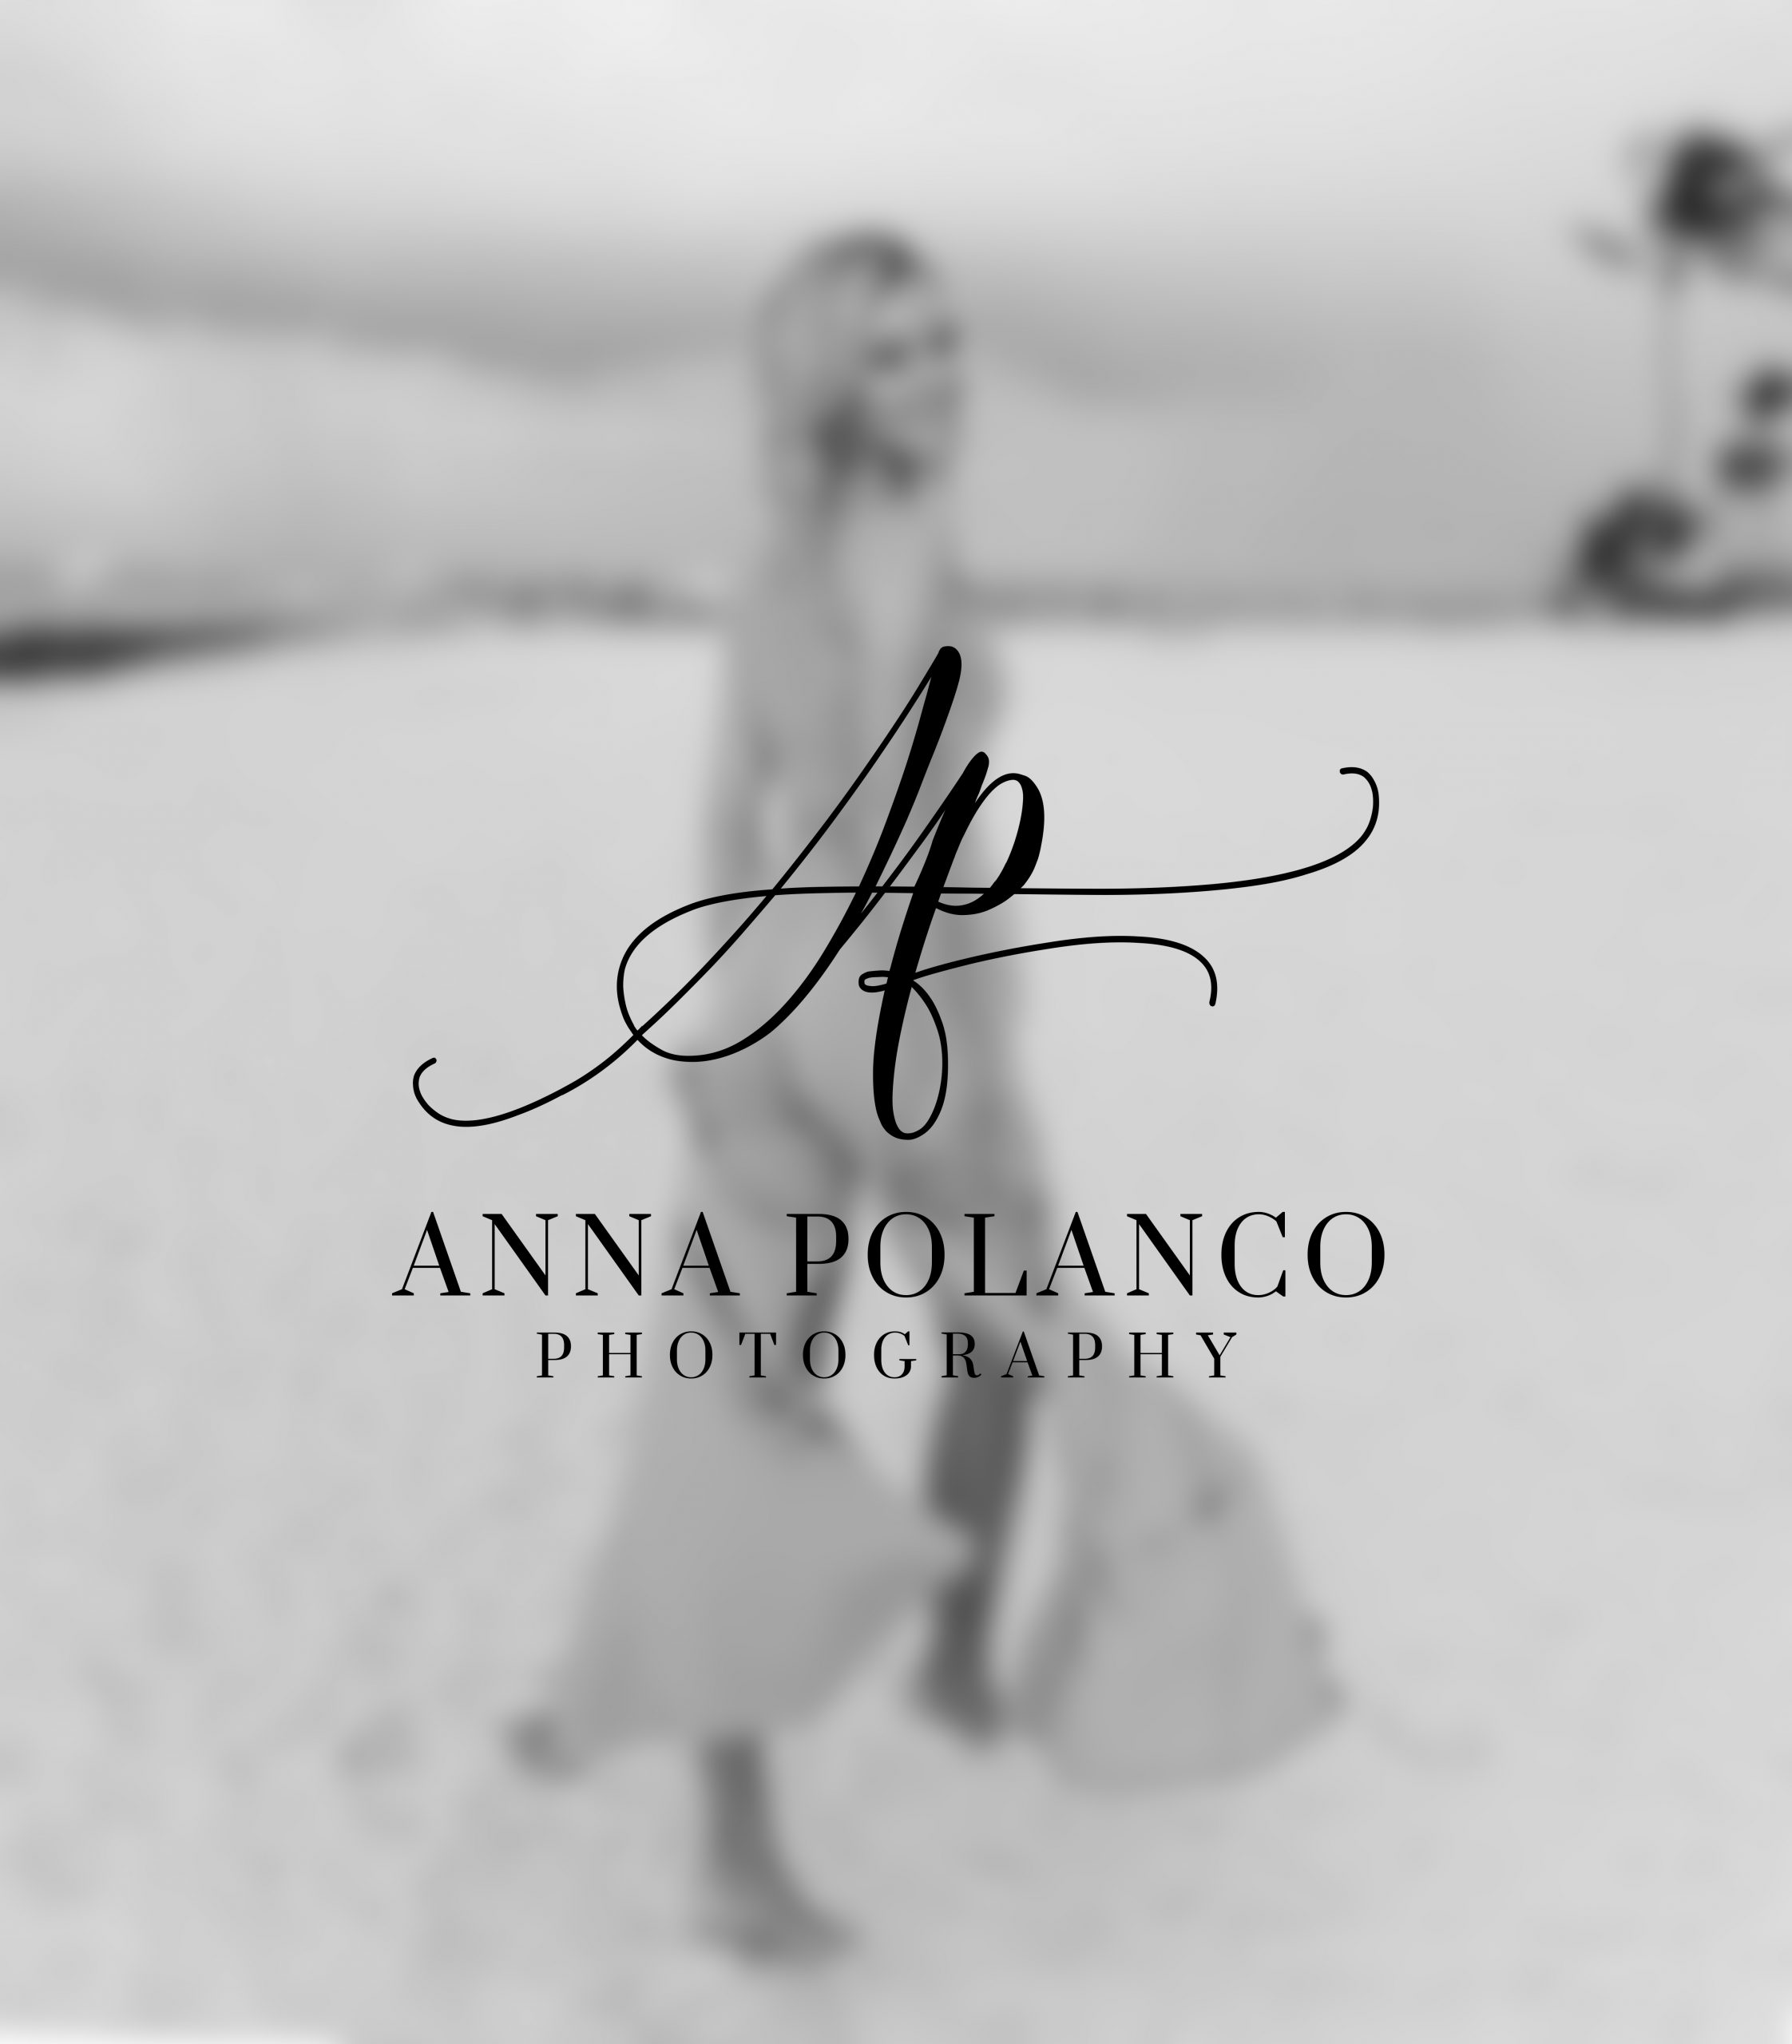 Anna Polanco – Photography